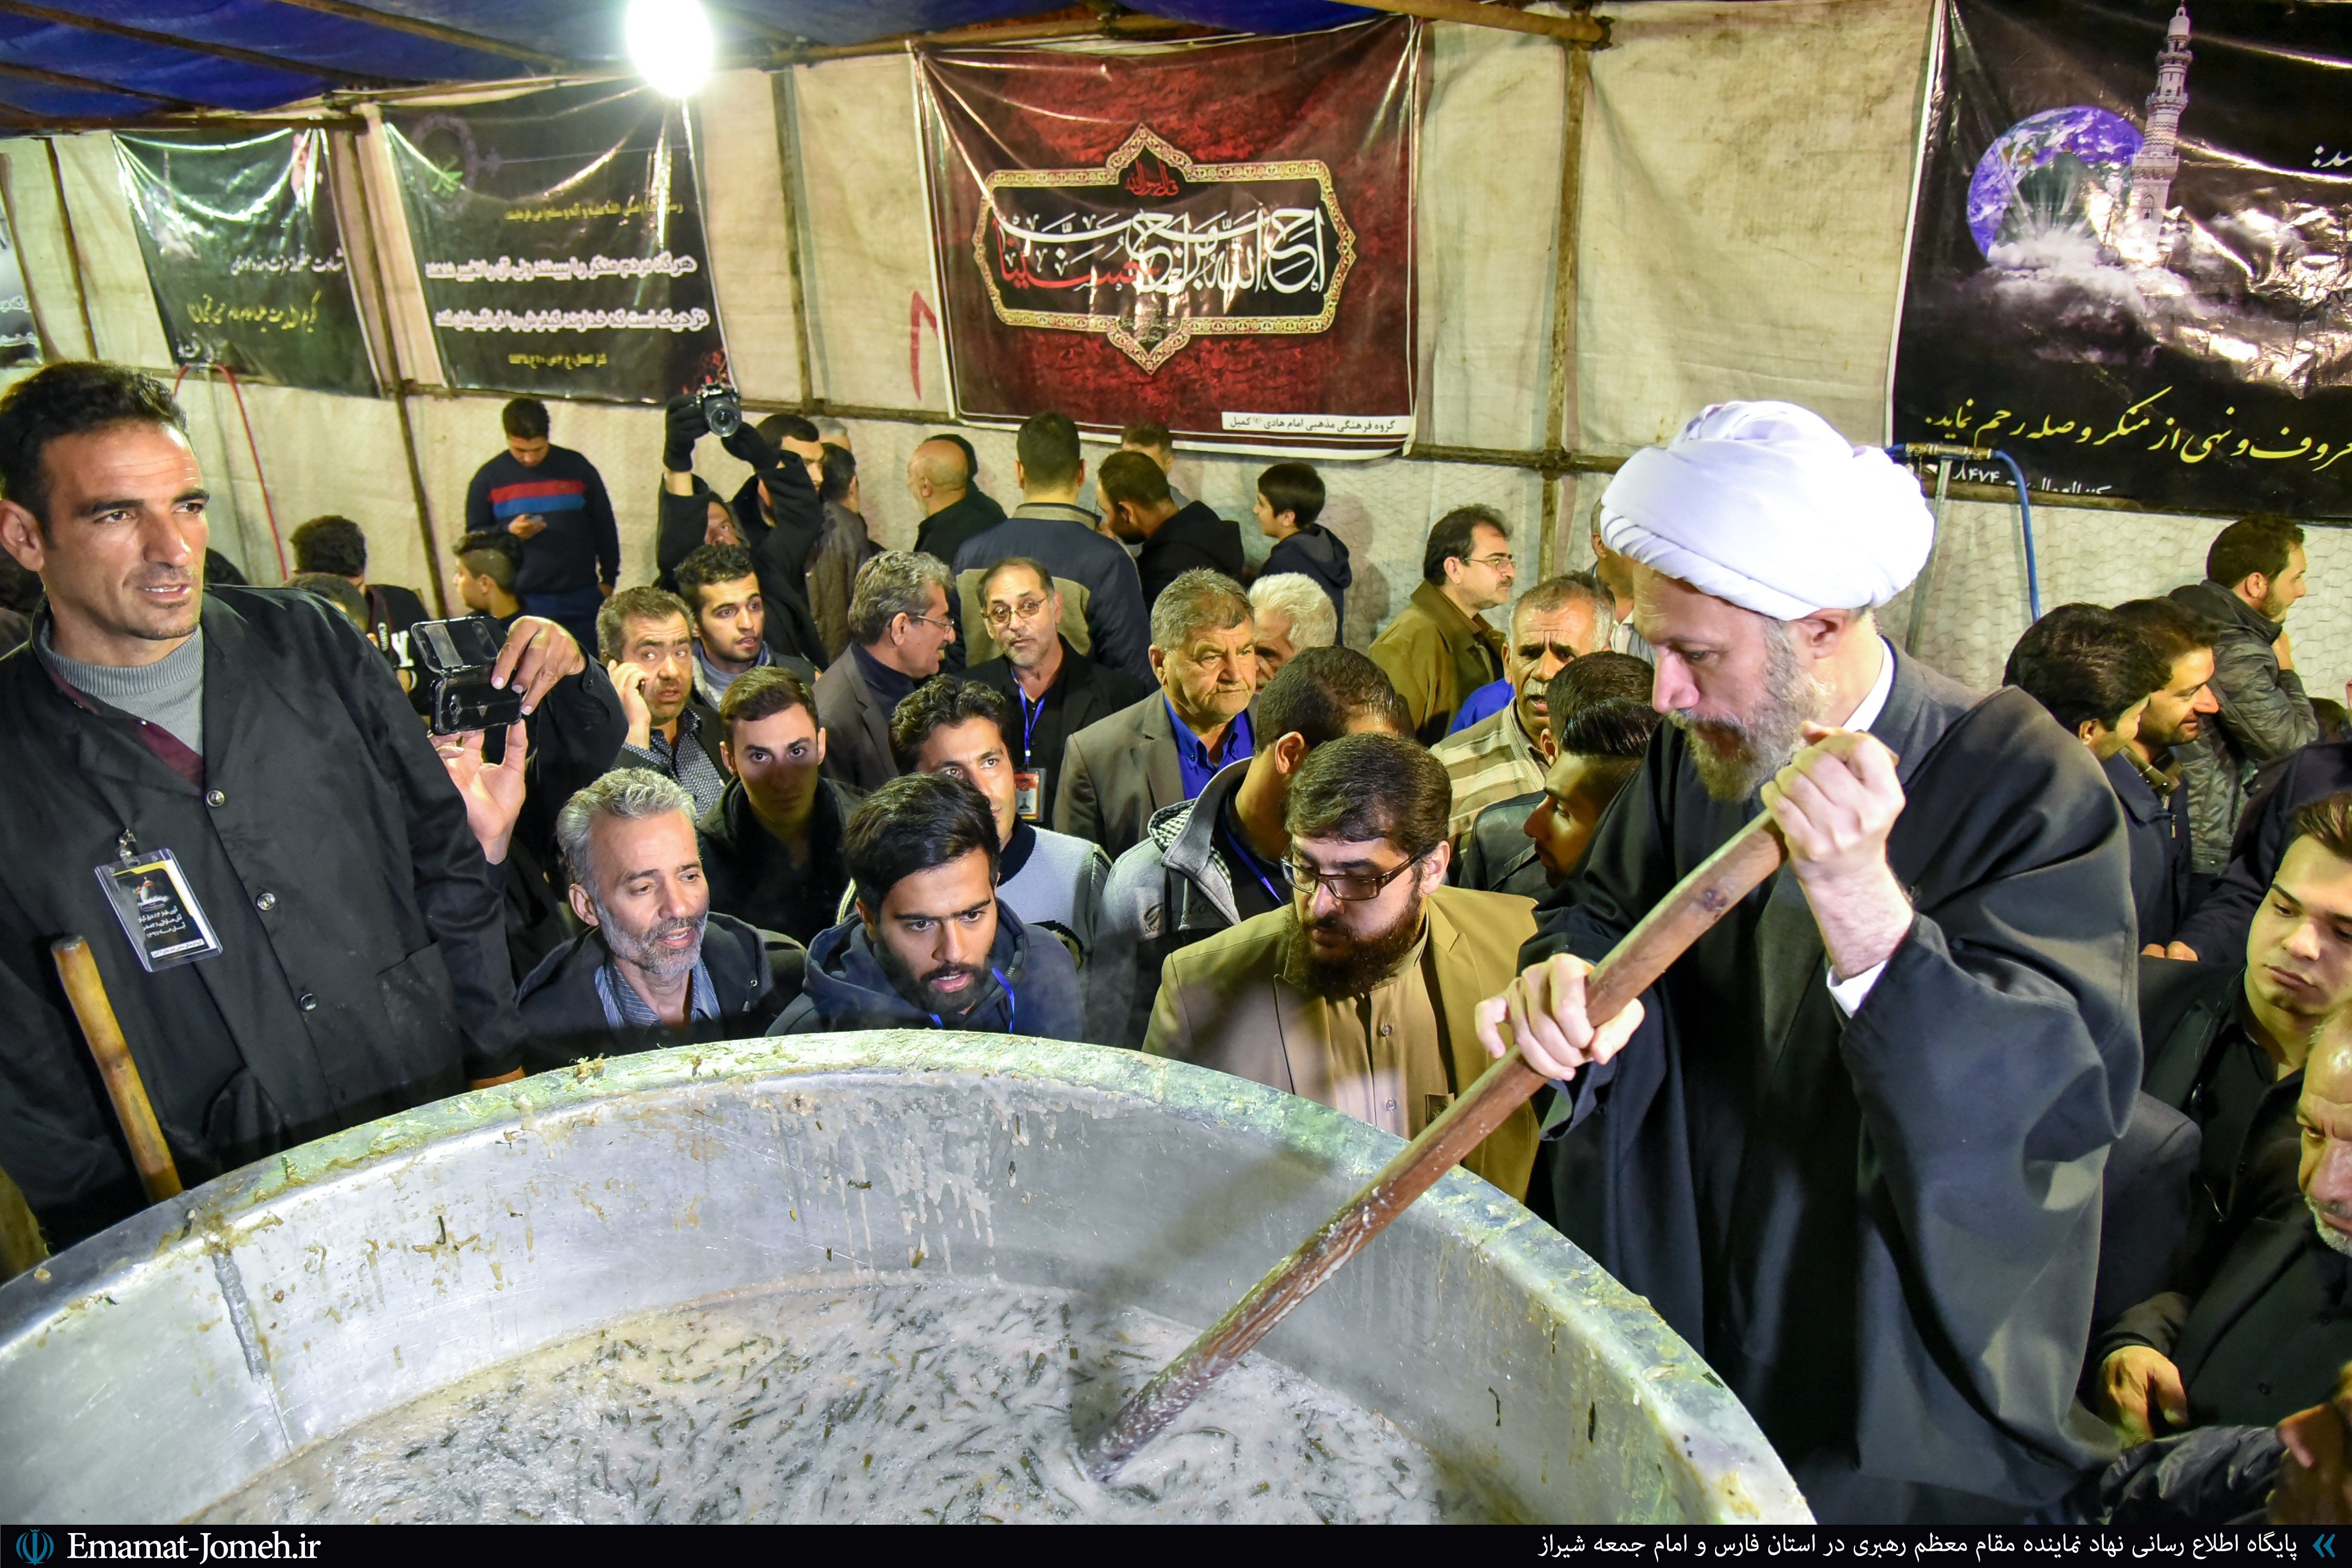 حضور در محل پخت آش نذری ۸۴ تنی به مناسبت ۲۸ صفر در پارک خلدبرین شیراز